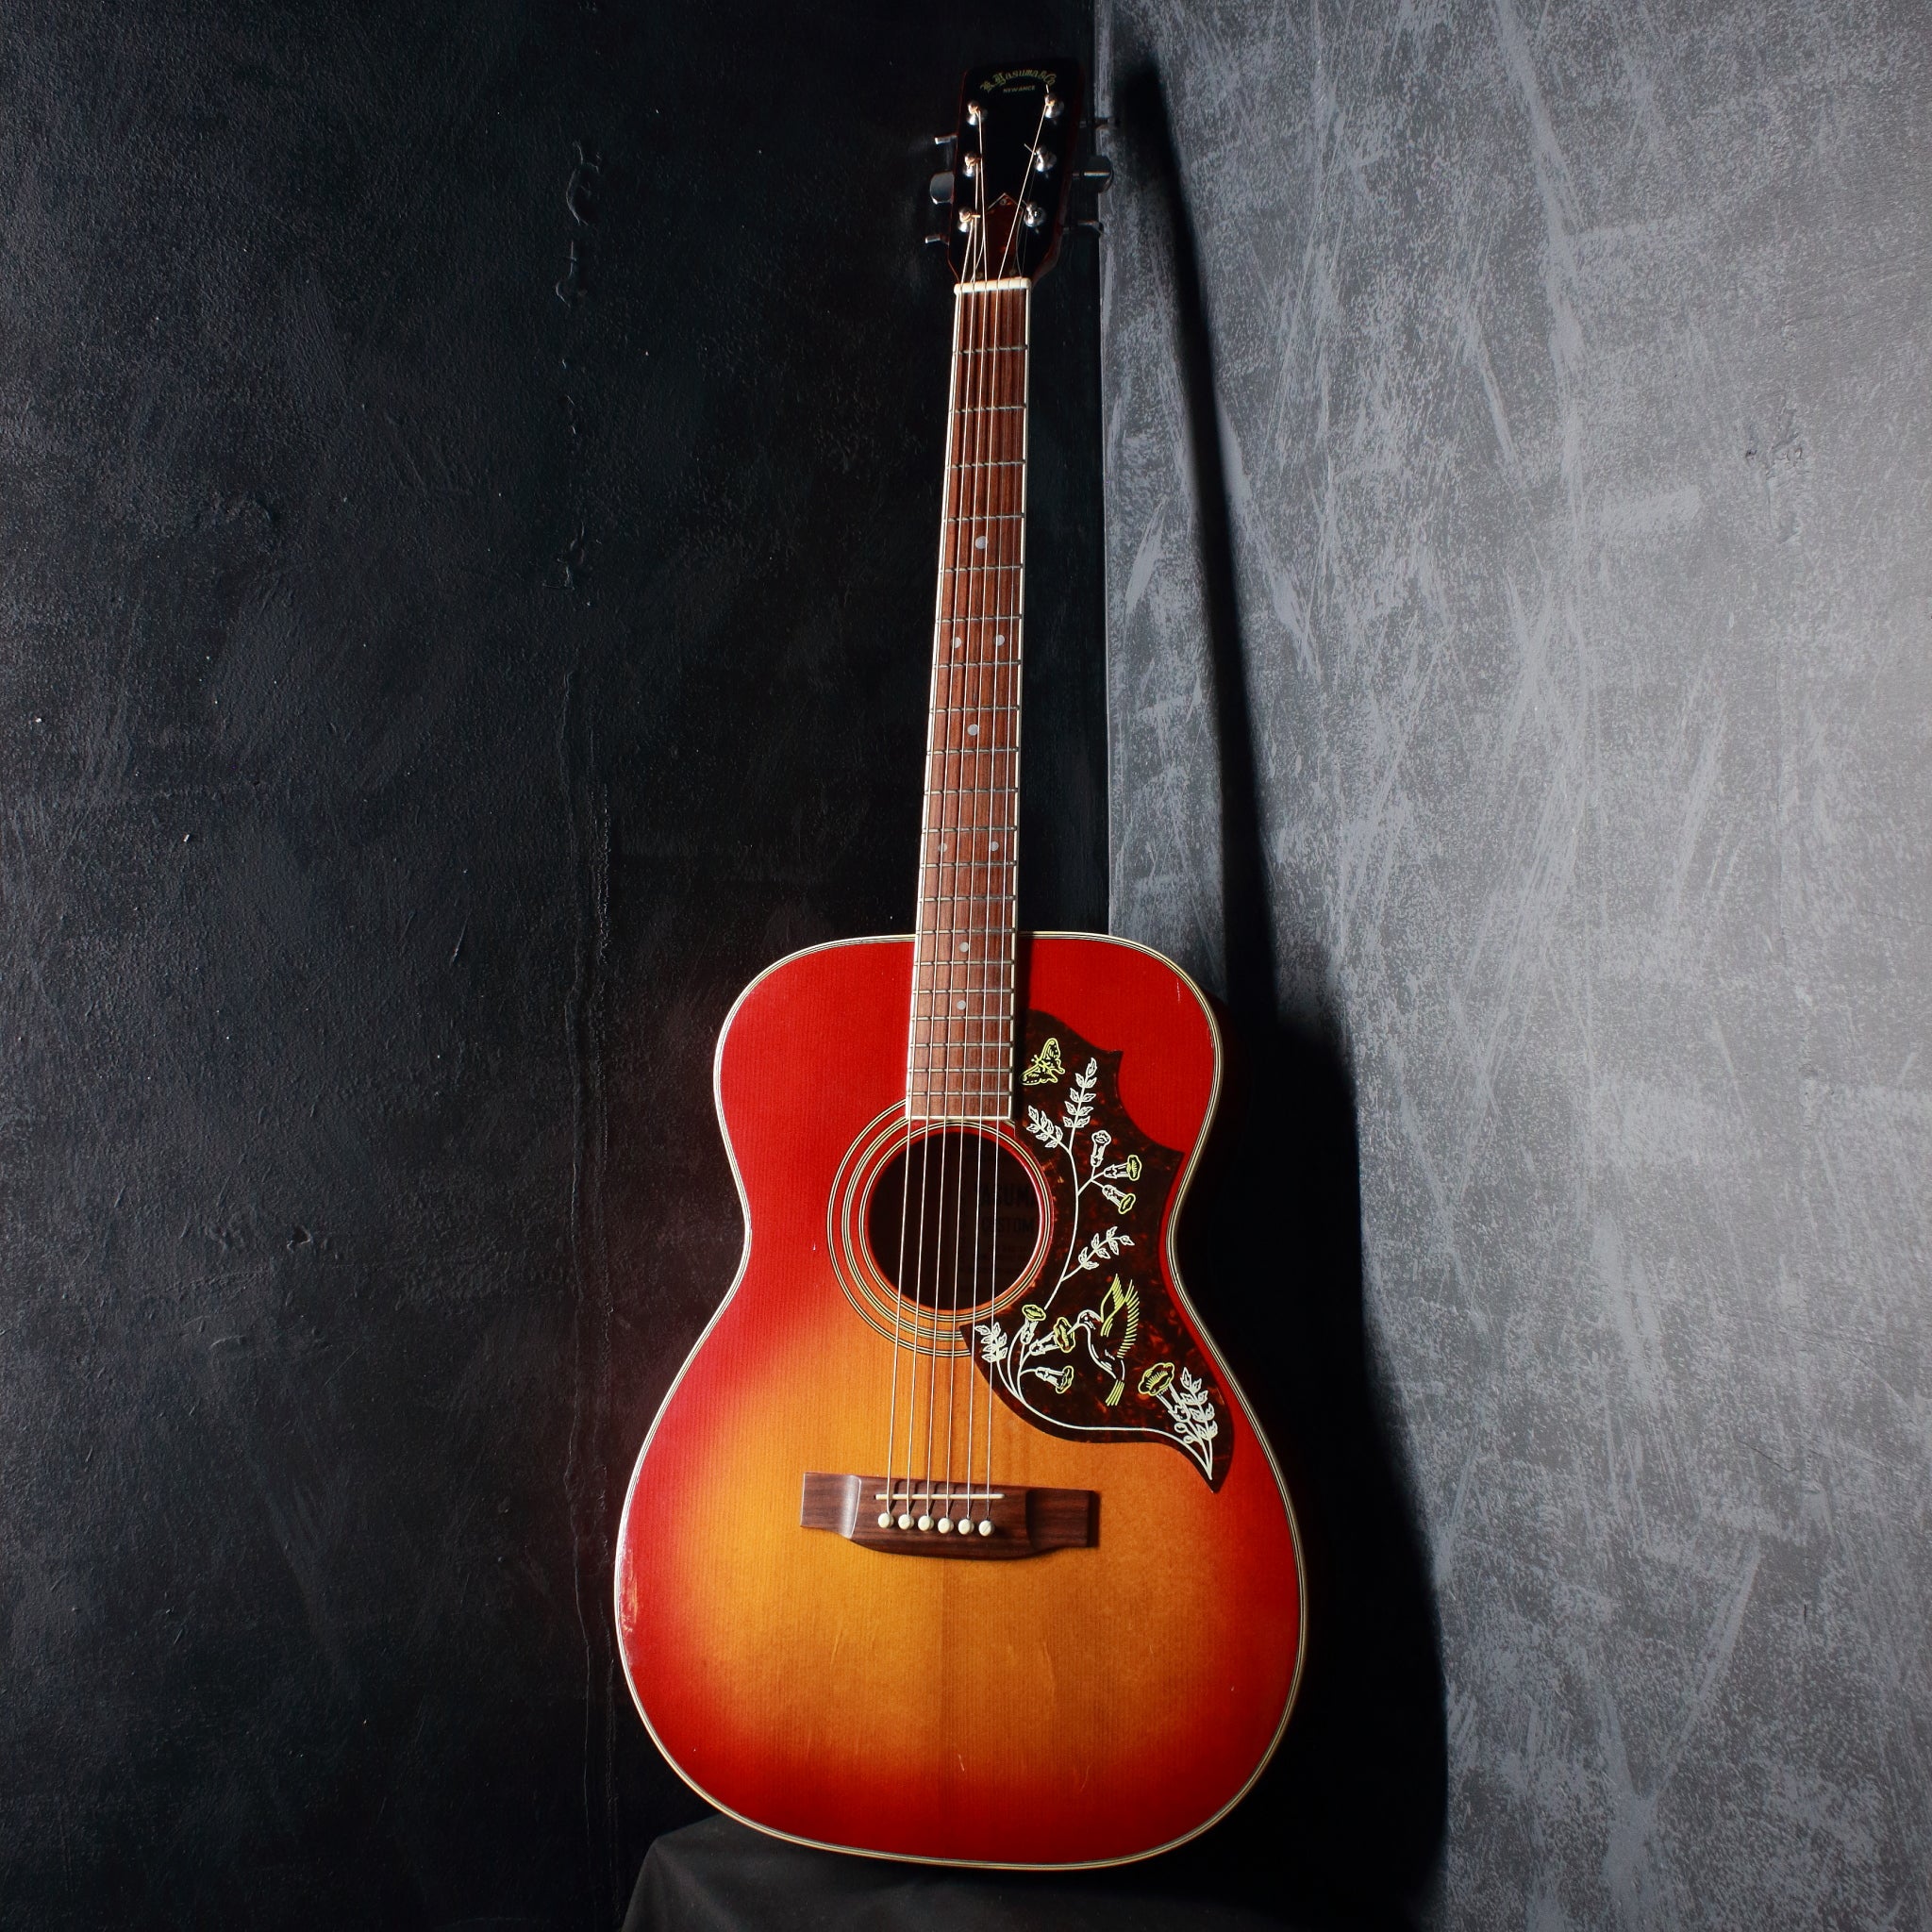 Yasuma ヤスマ アコースティックギター Model No. 250 - 弦楽器、ギター